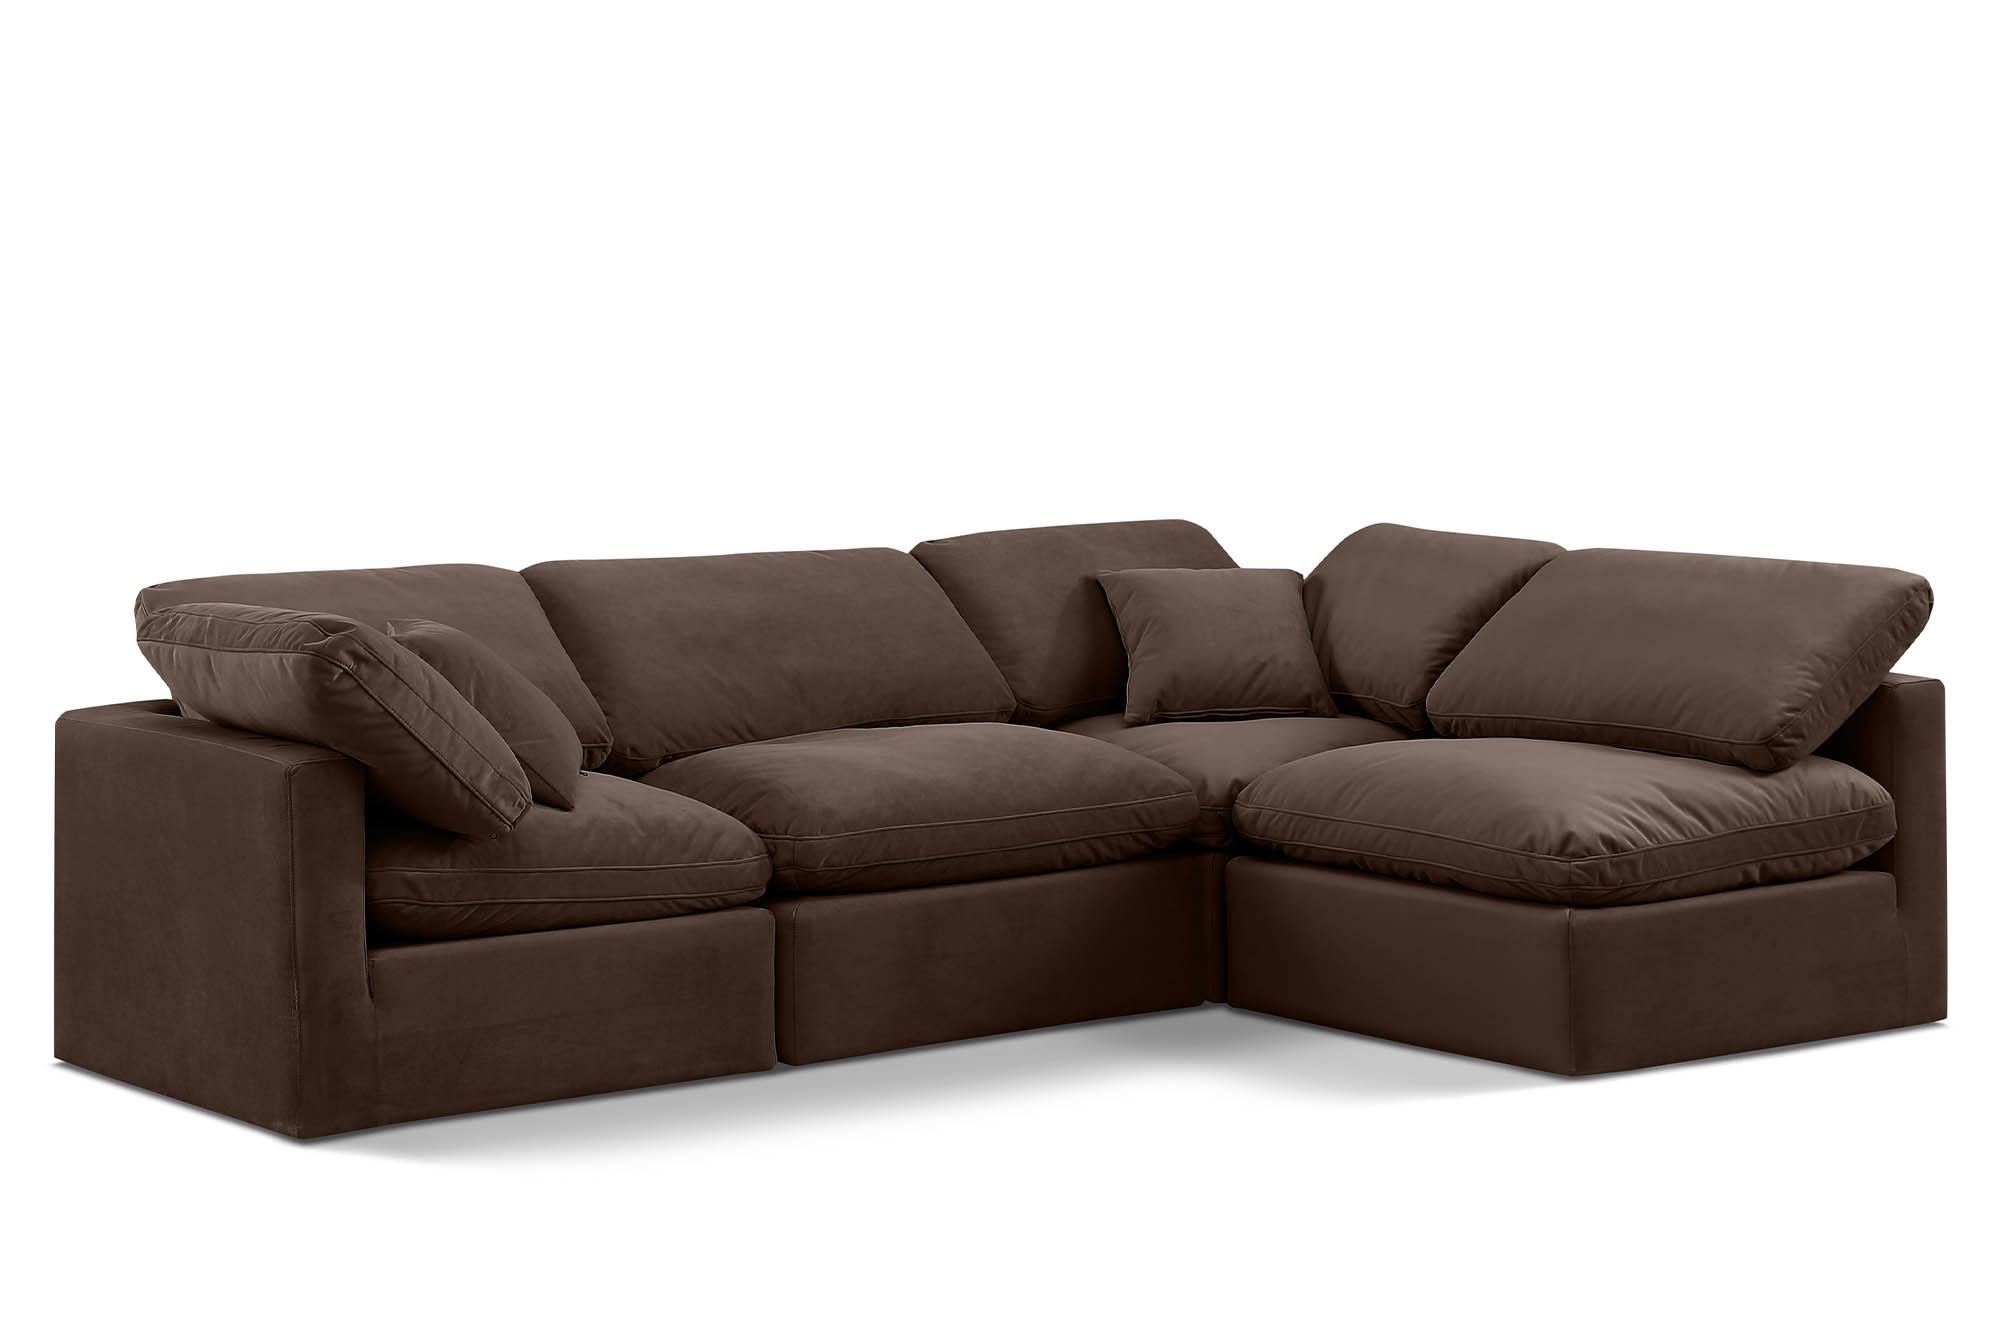 Contemporary, Modern Modular Sectional Sofa INDULGE 147Brown-Sec4B 147Brown-Sec4B in Brown Velvet